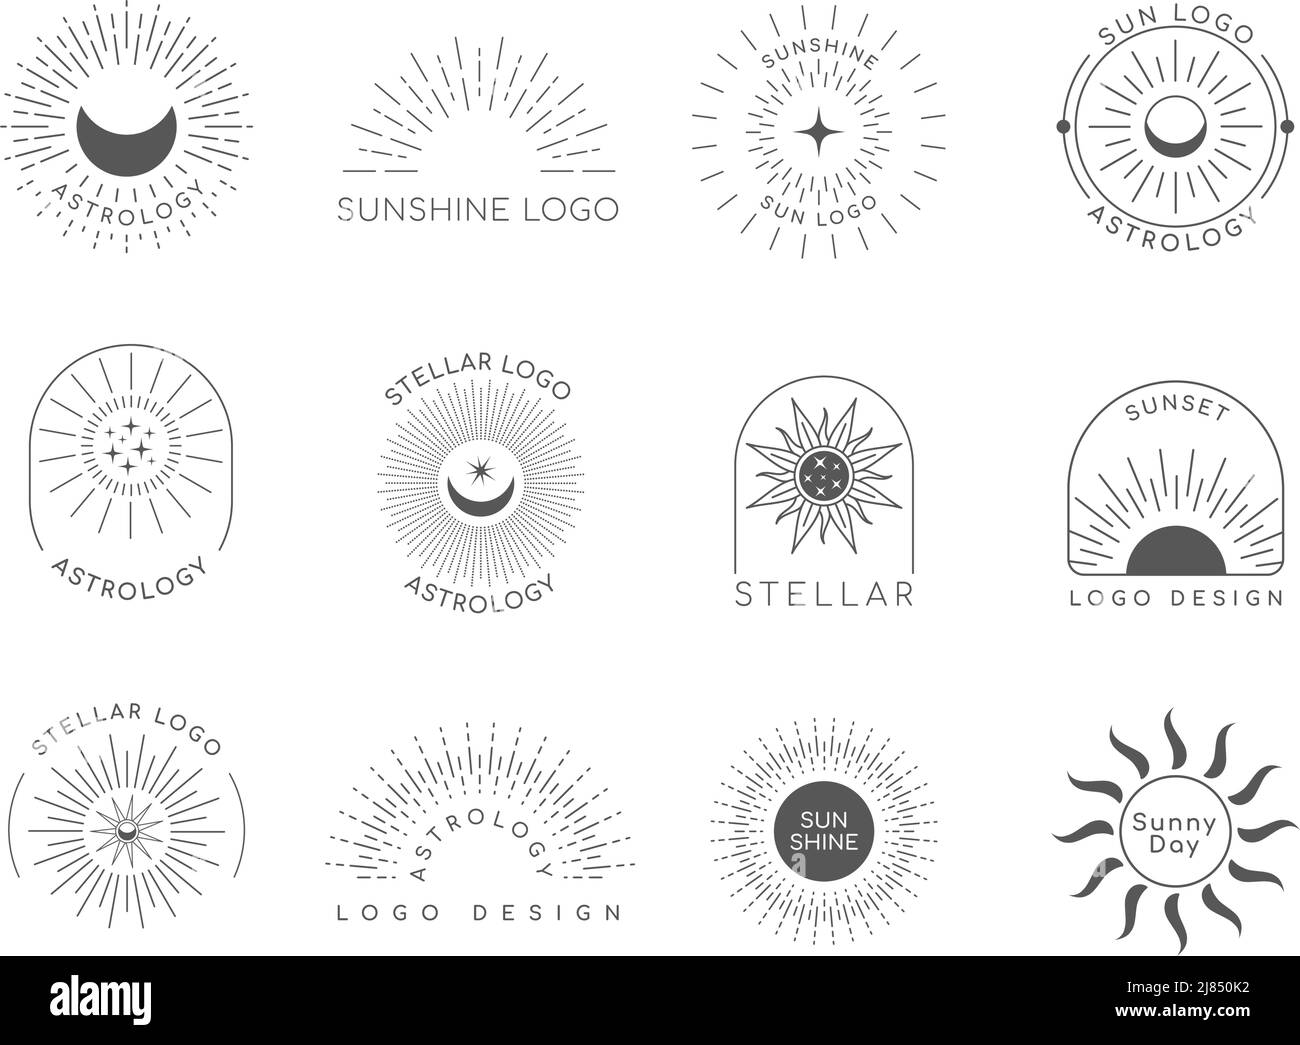 Sonnenemblem. Linear starburst Business-Logo, Boho dekorative Banner-Vorlage. Vektor-isolierter Satz Stock Vektor